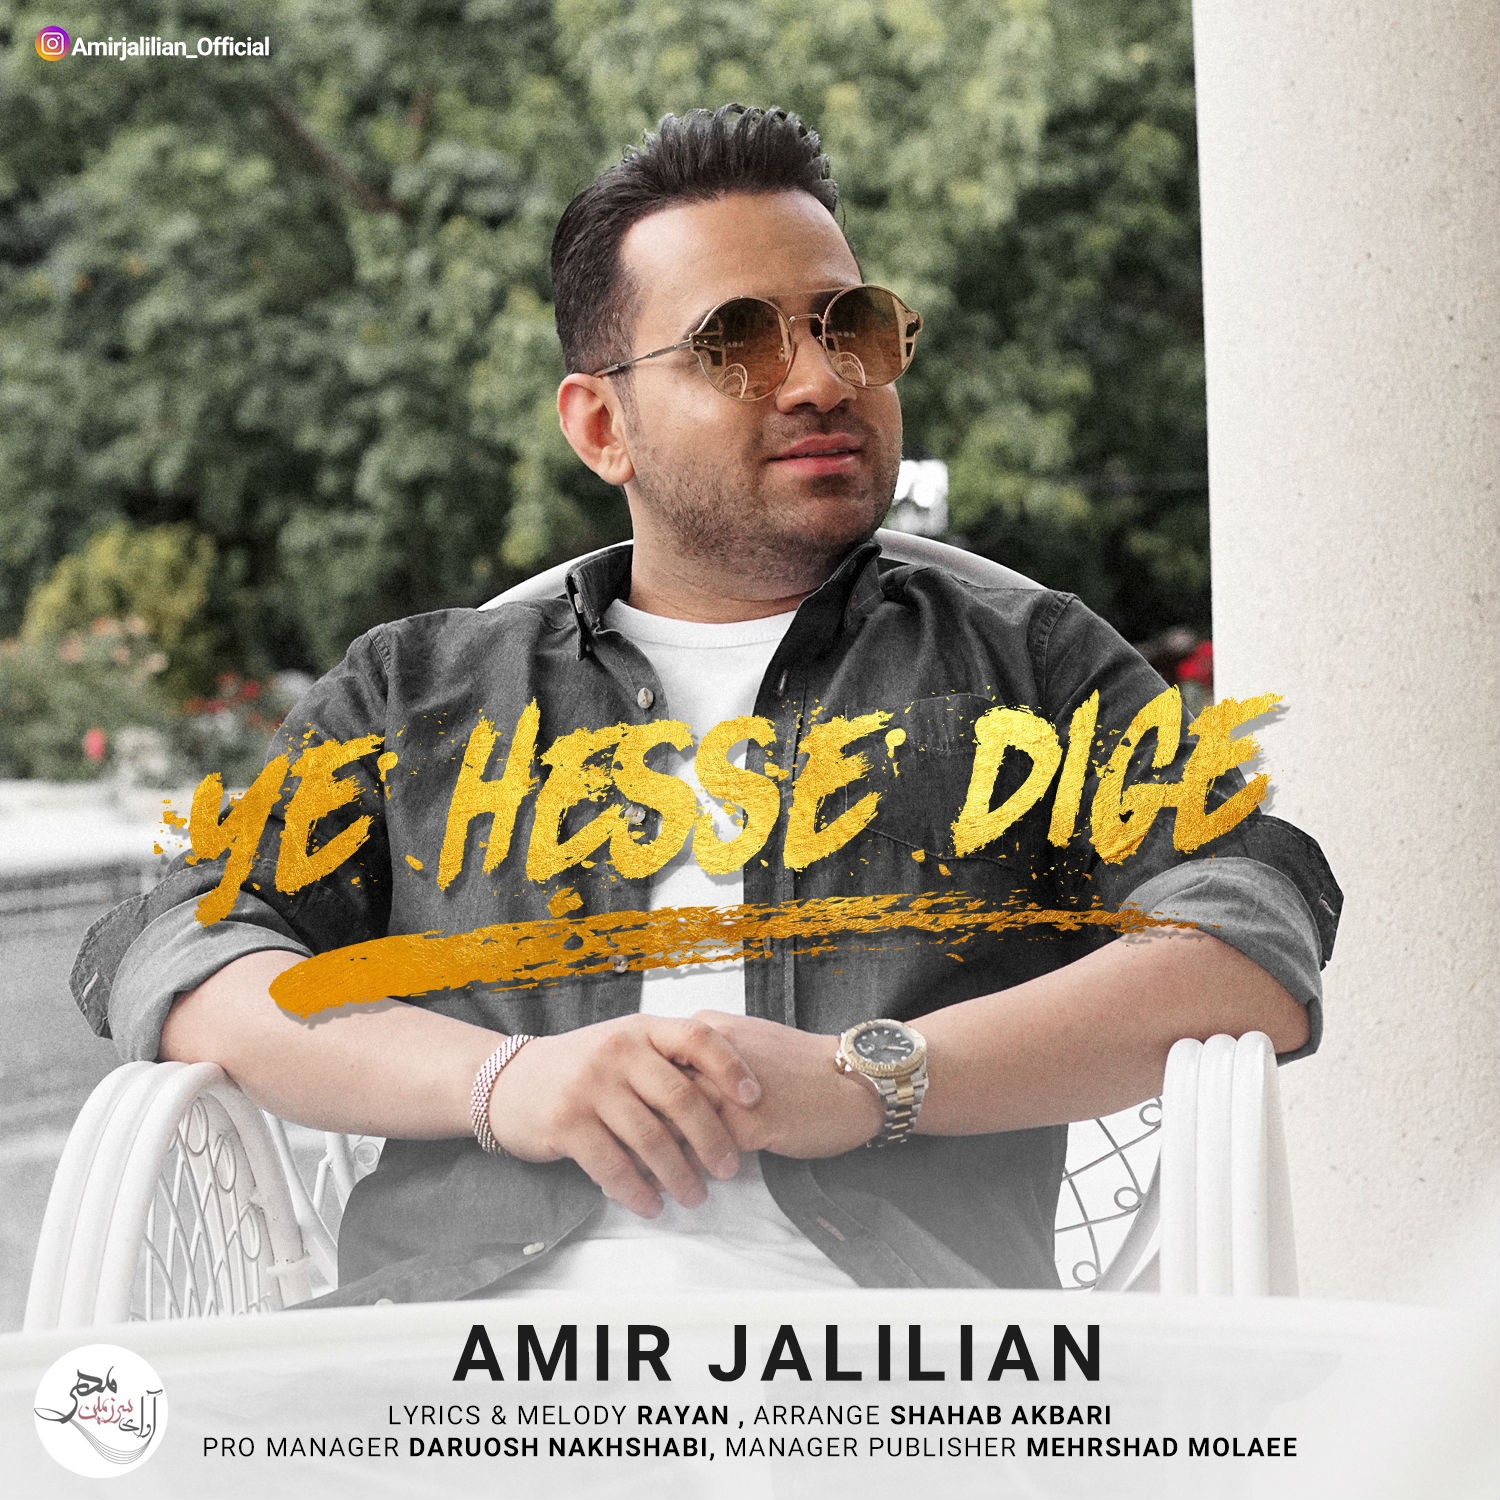  دانلود آهنگ جدید امیر جلیلیان - یه حس دیگه | Download New Music By Amir Jalilian - Ye Hesse Dige